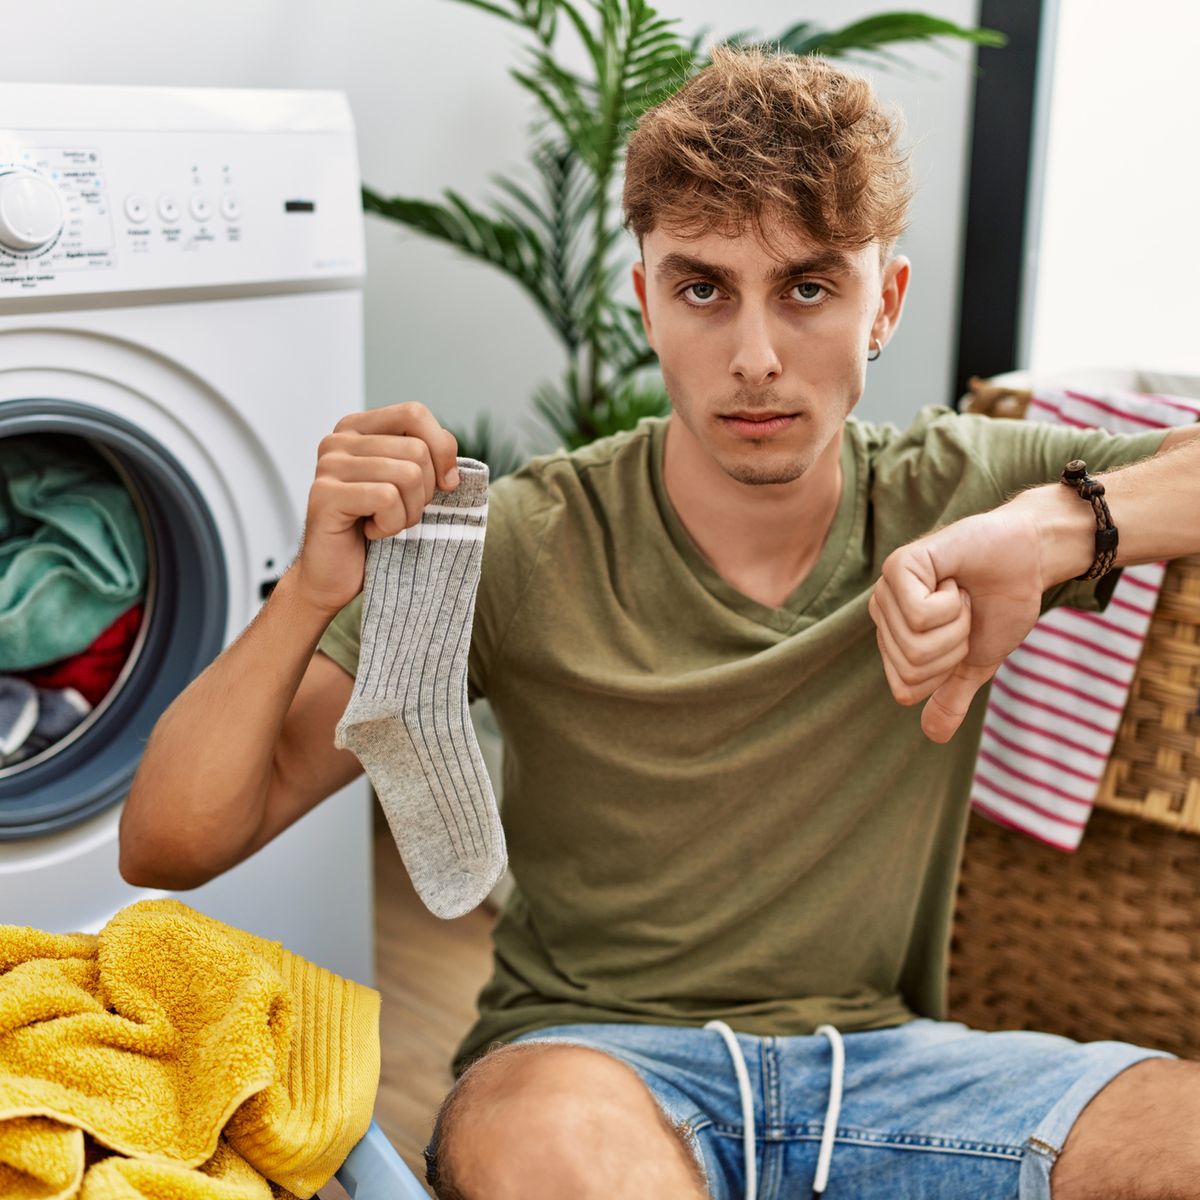 Qué ropa puedo meter en la secadora y cuál no puedo secar?